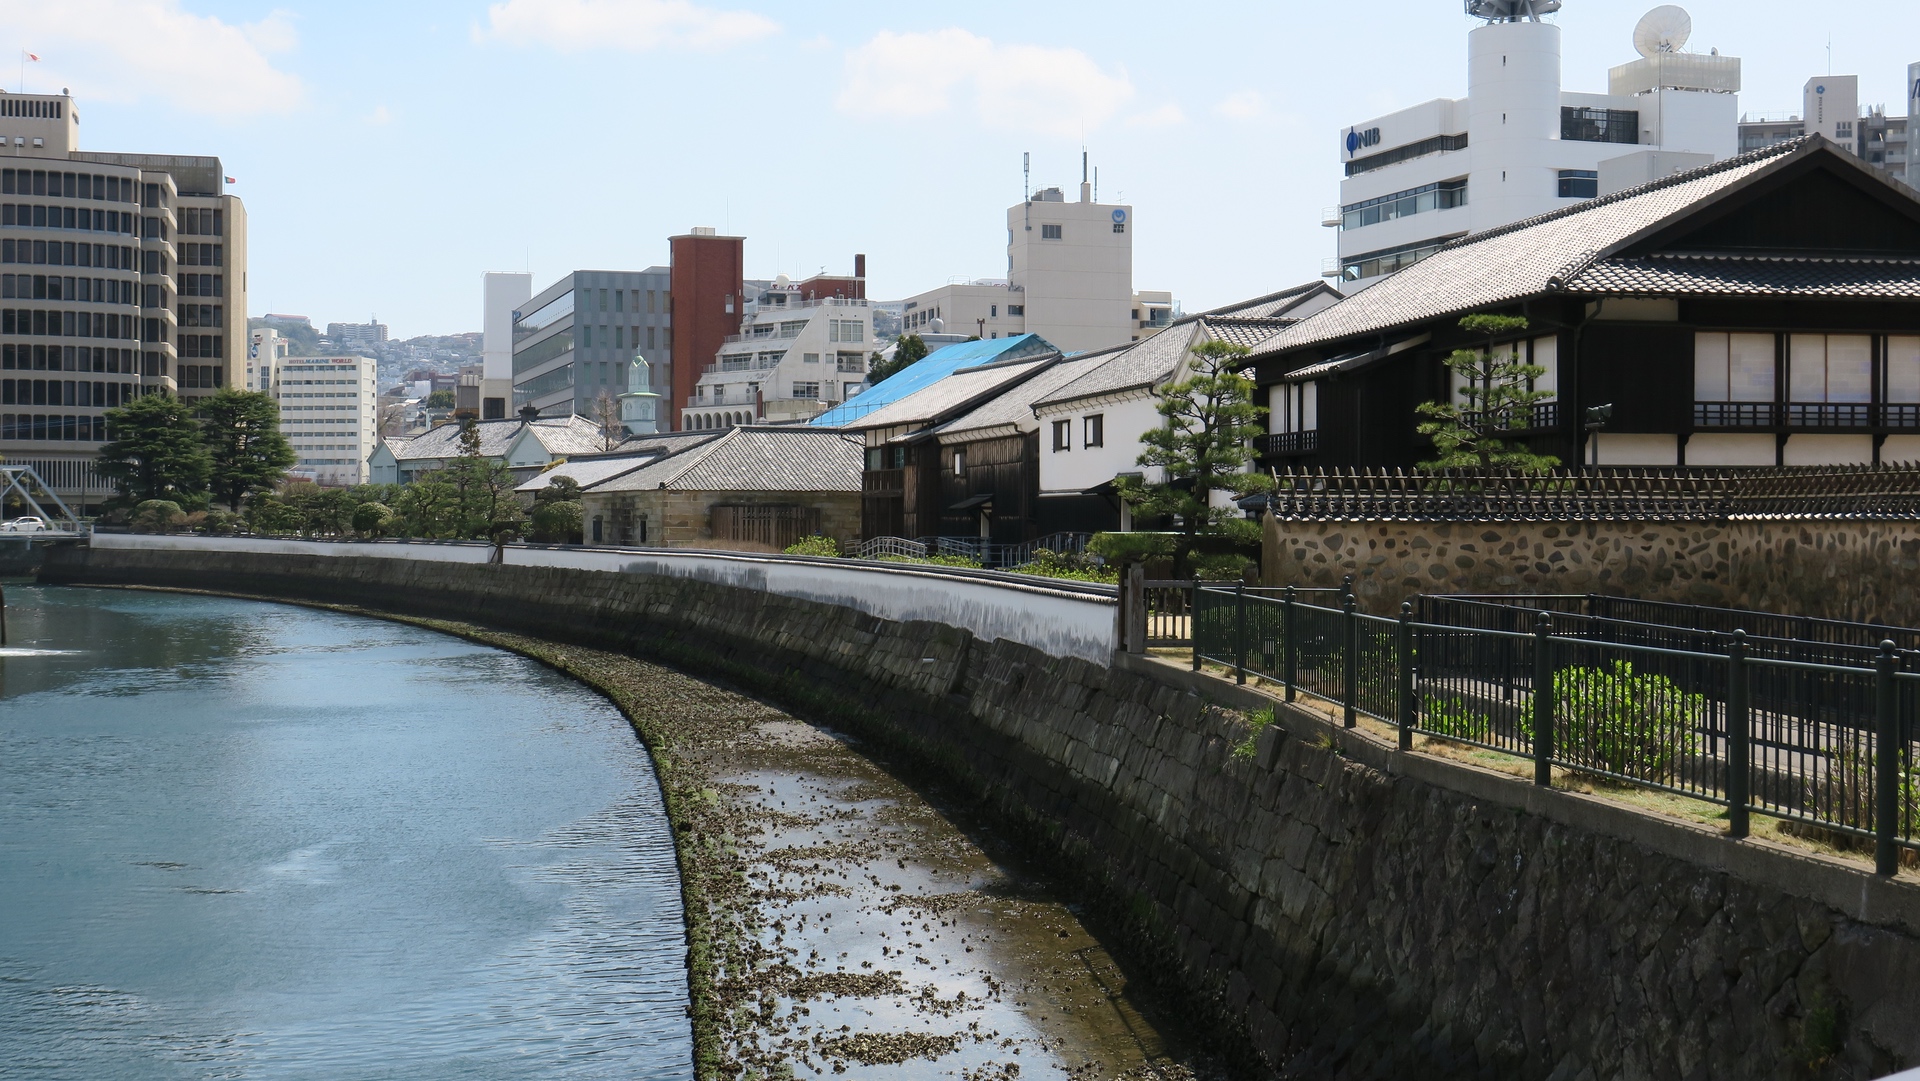 Dejima im Jahr 2016 vor dem Bau der neuen Eingangsbrücke.